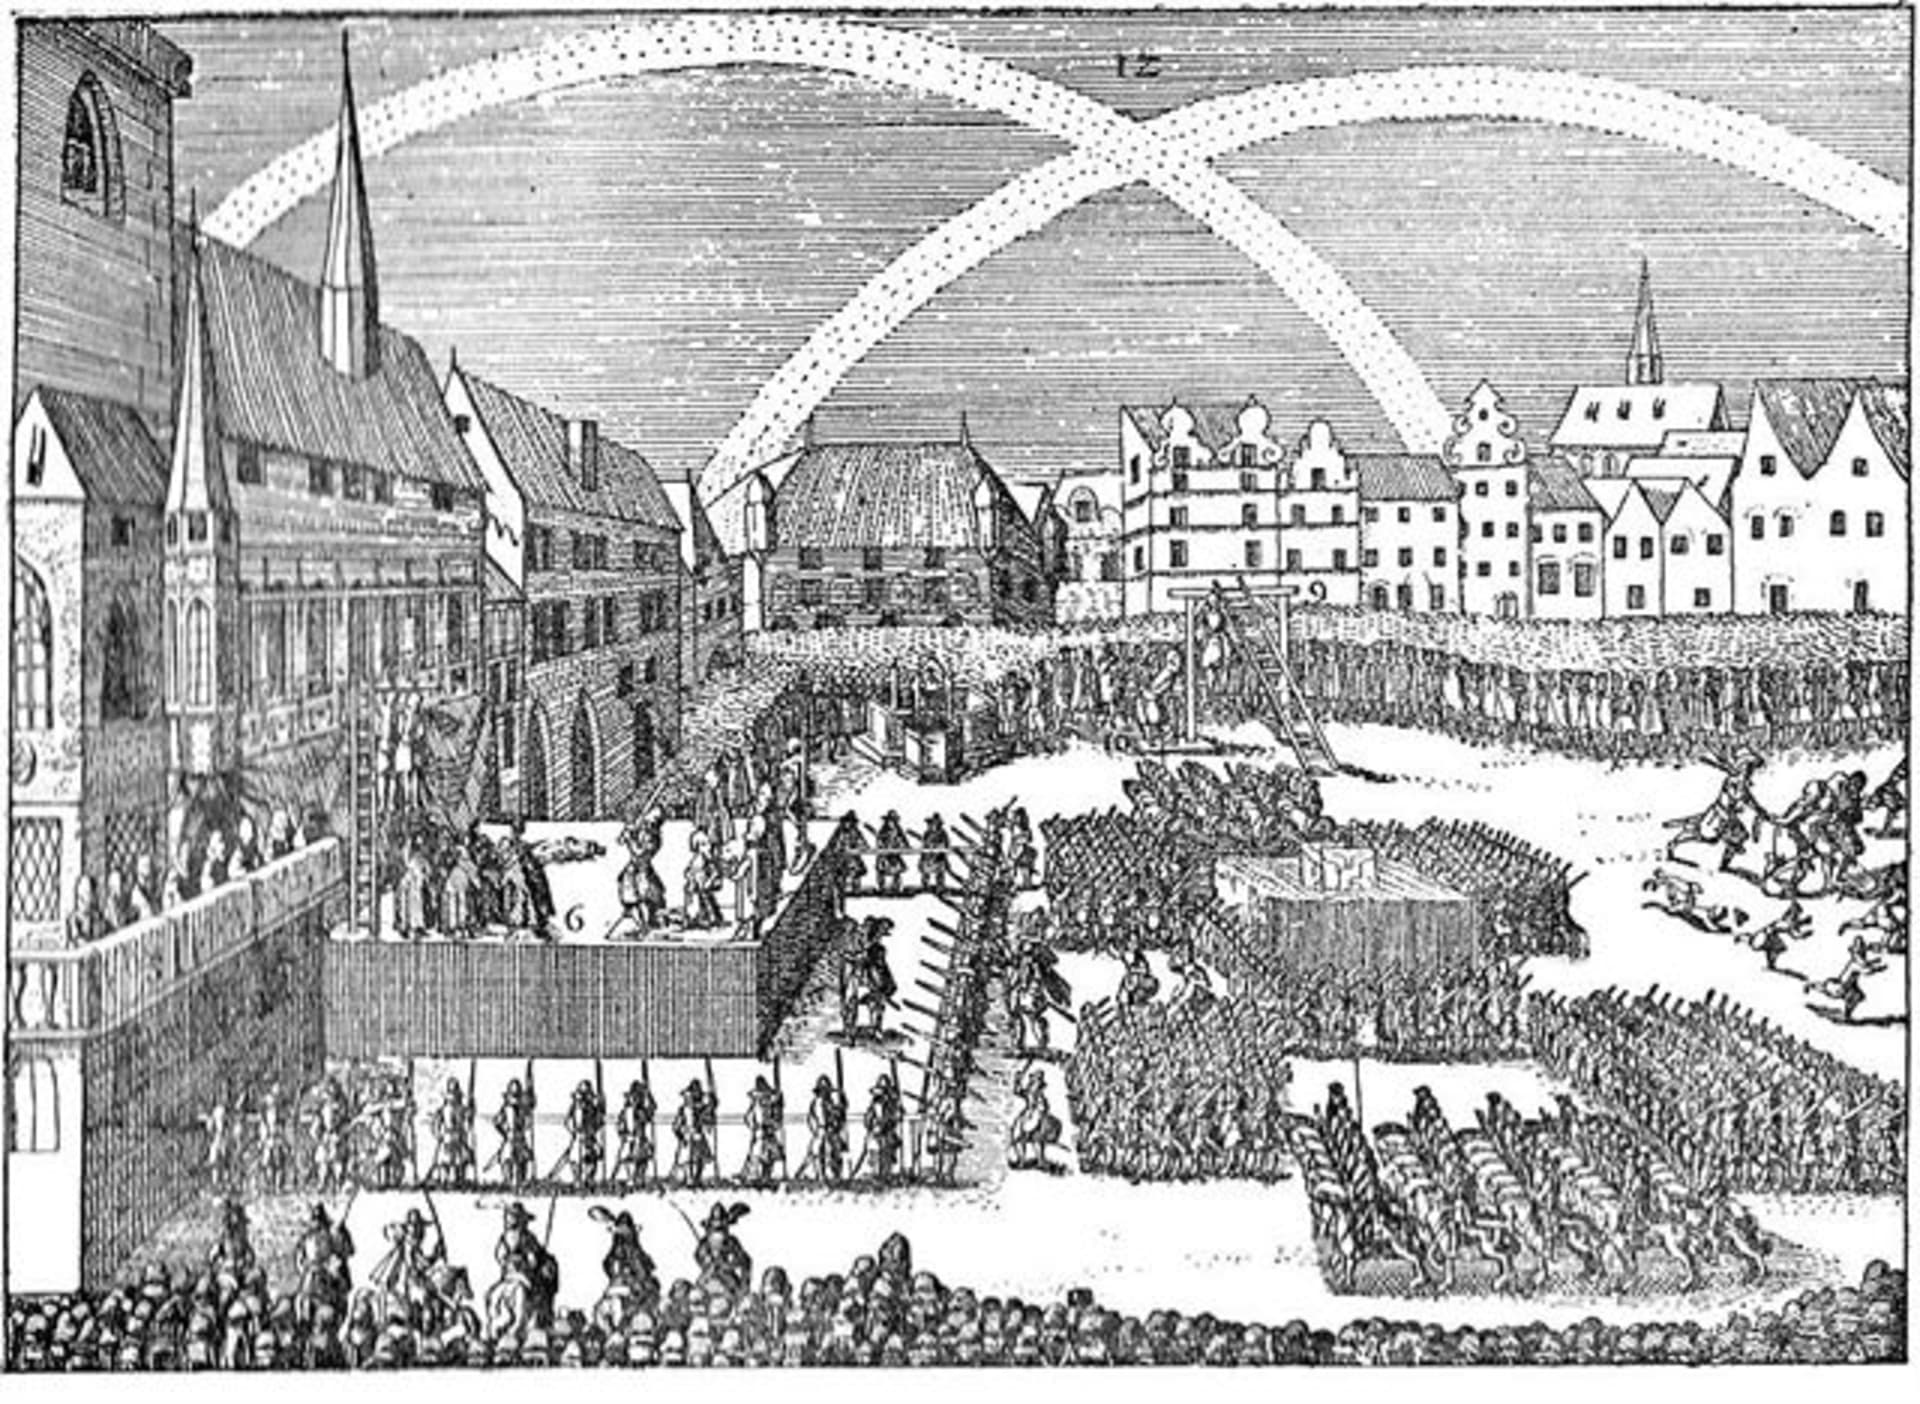 Staroměstská exekuce, poprava 27 rebelů 21. července 1621. Někteří byli sťati, jiní oběšeni (autor: Eduard Herold (1820-1895), dle starodávného dřevorytu, Public domain, via Wikimedia Commons). 